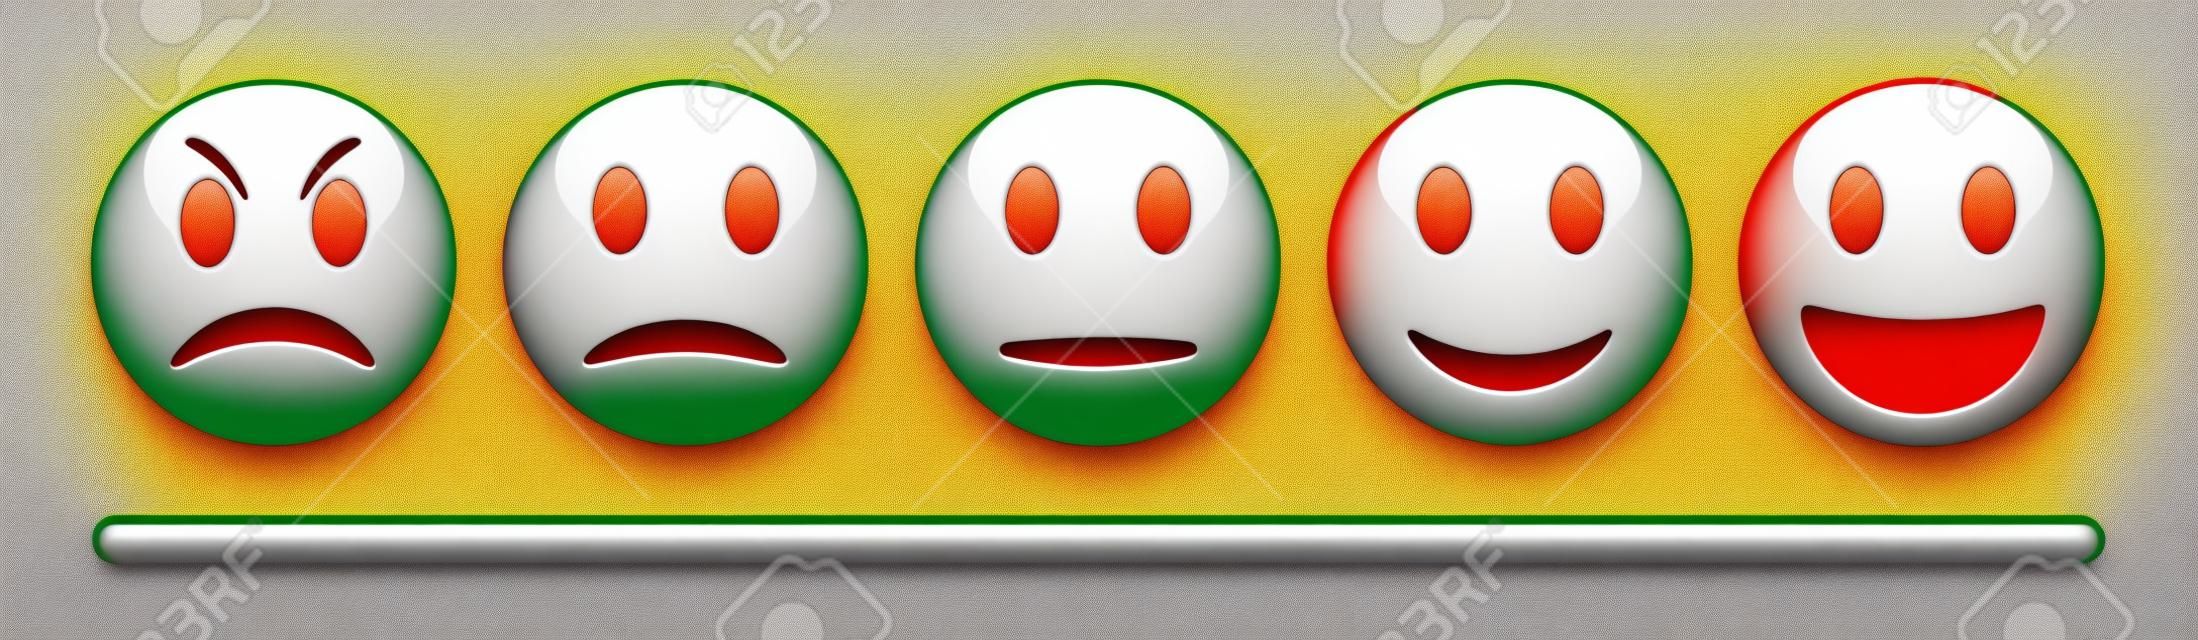 Escala de feedback de emoção do vetor no fundo branco. Conjunto de emoticon irritado, triste, neutro e feliz. Vermelho brilhante, laranja, amarelo e verde engraçado desenho animado ícone Emoji. Ilustração 3D